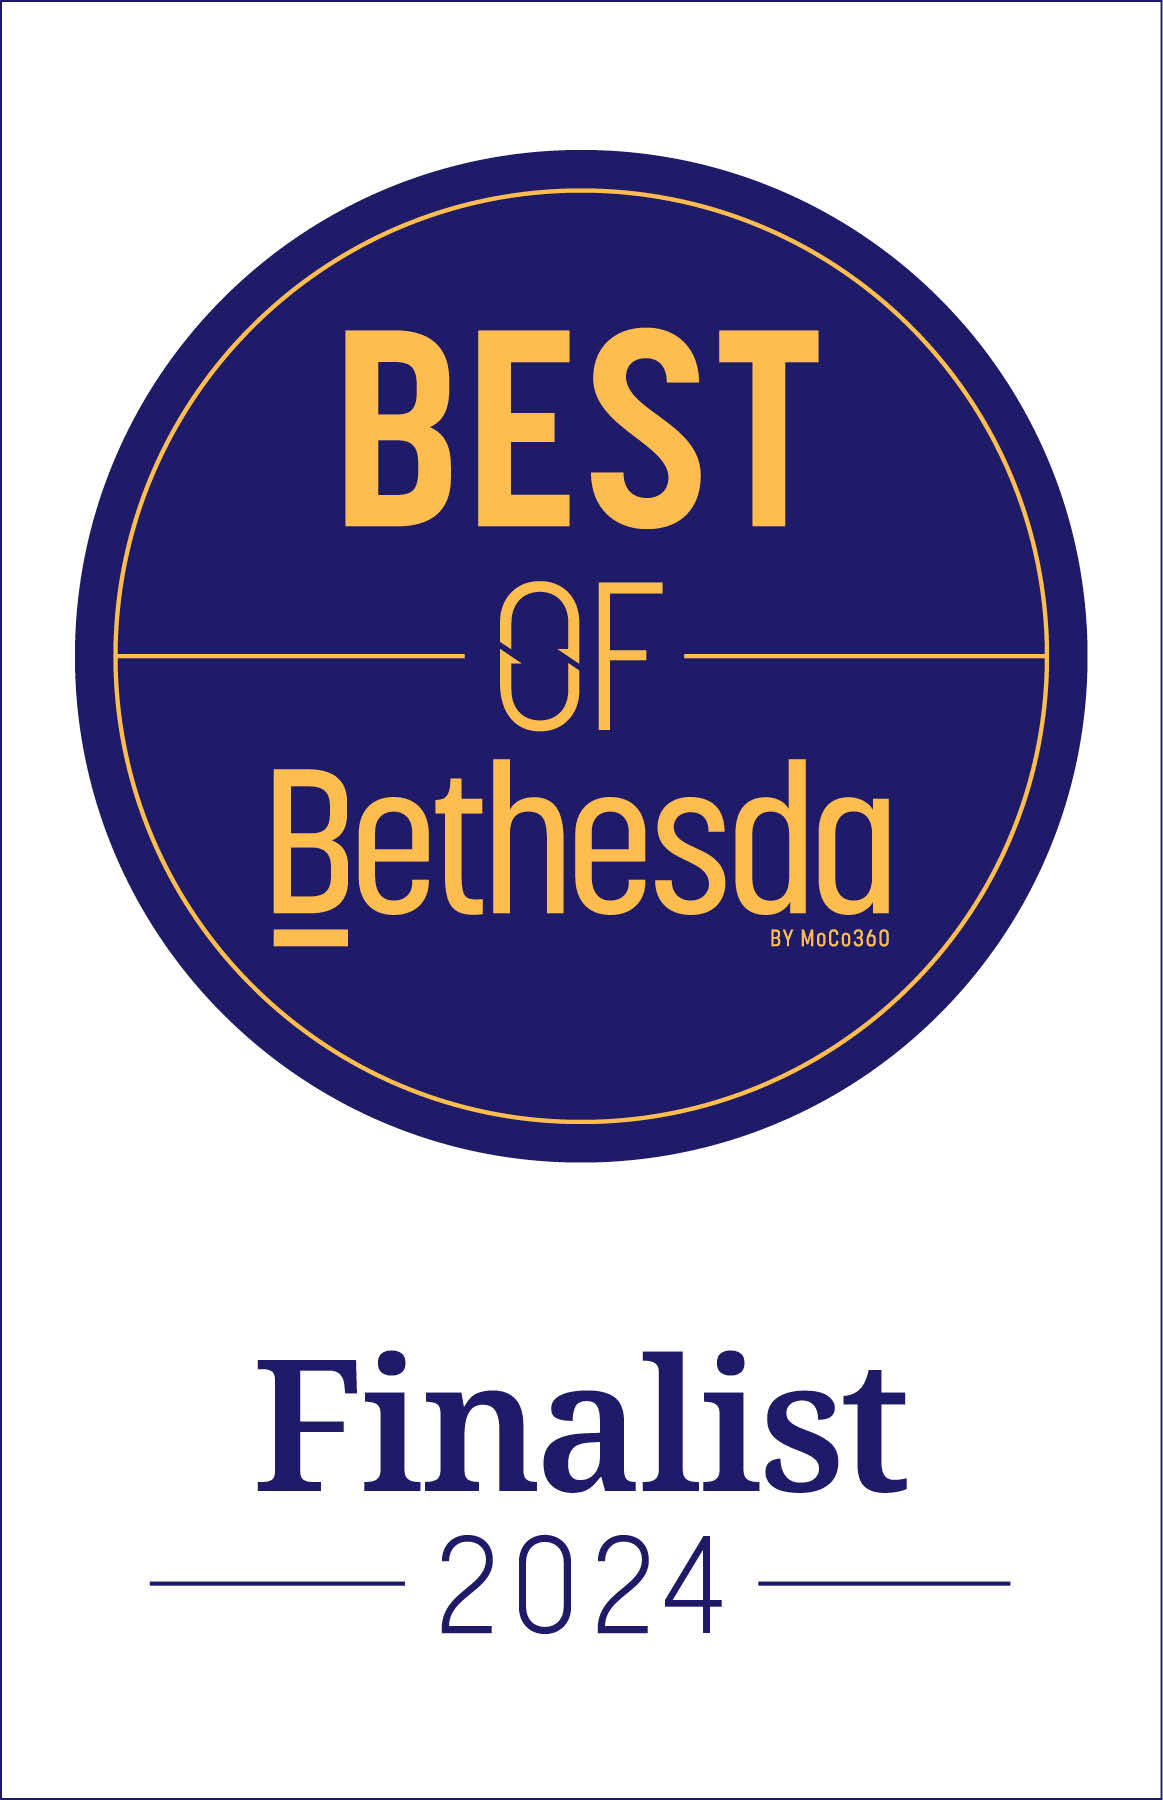 best of bethesda finalist 2024 graphic